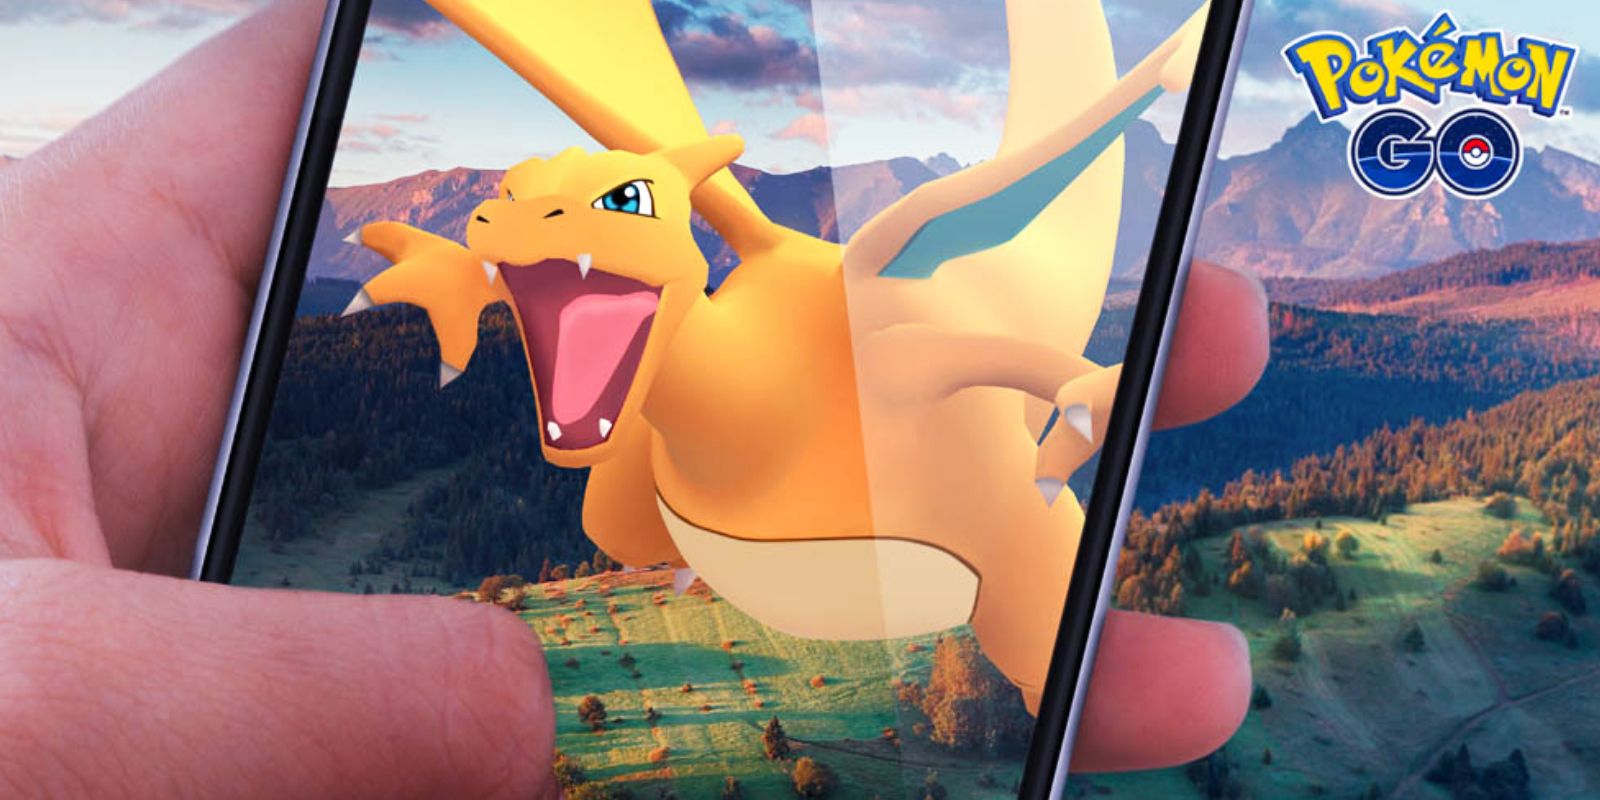 Pokémon GO's Biggest Changes Since Launch Features